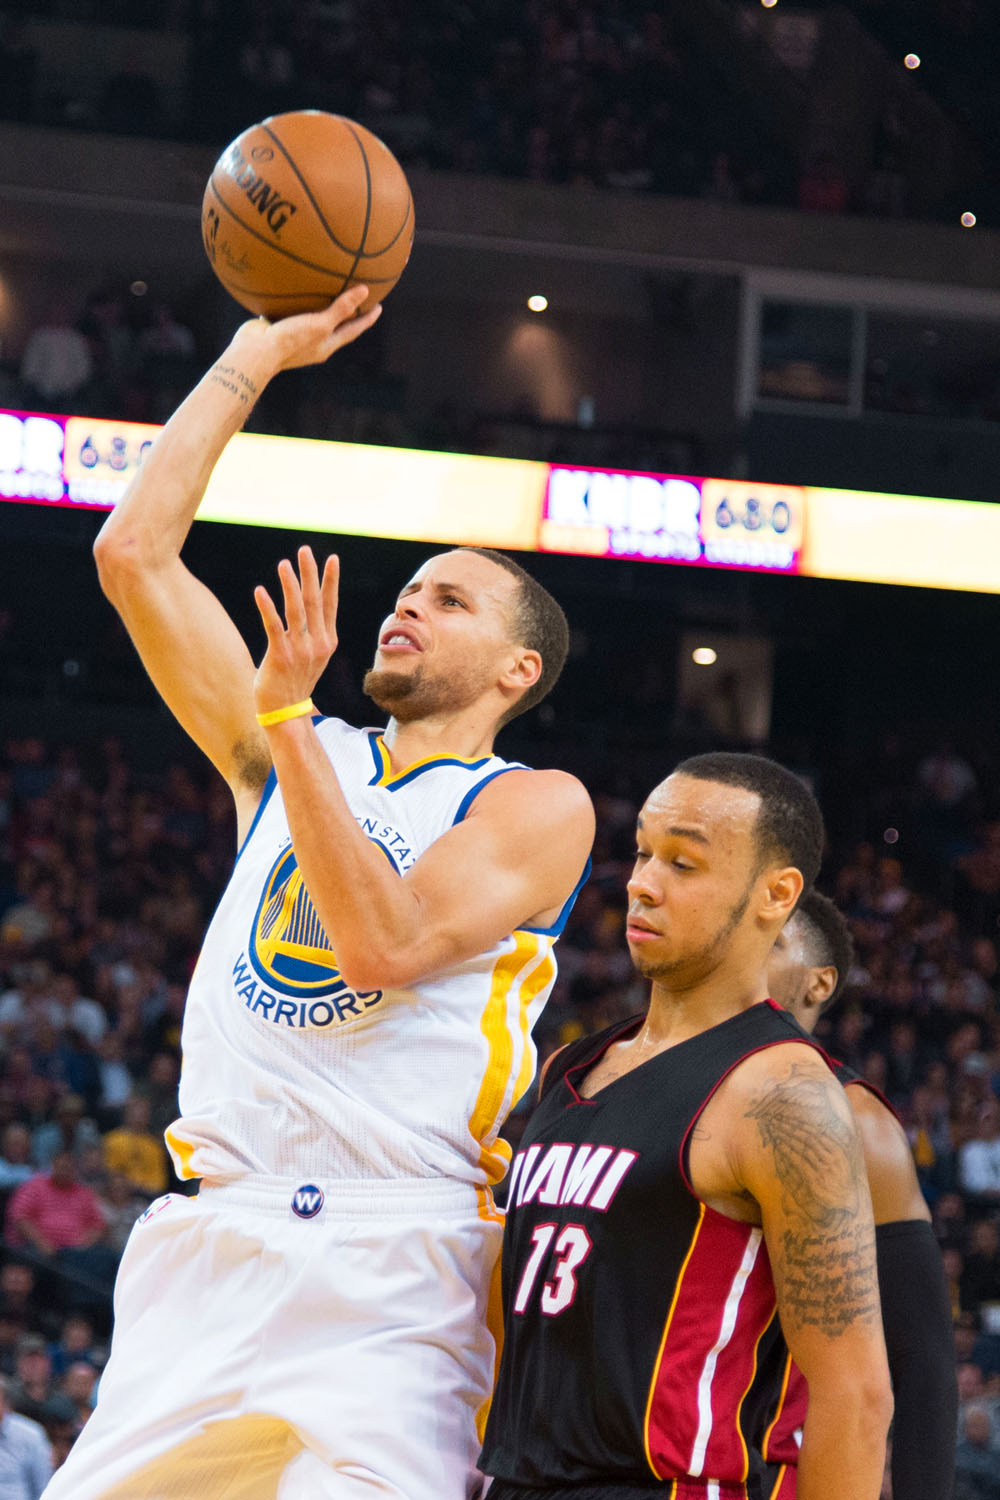 Curry jelenleg az NBA legötletesebb irányítója. És mégg dobni is tud